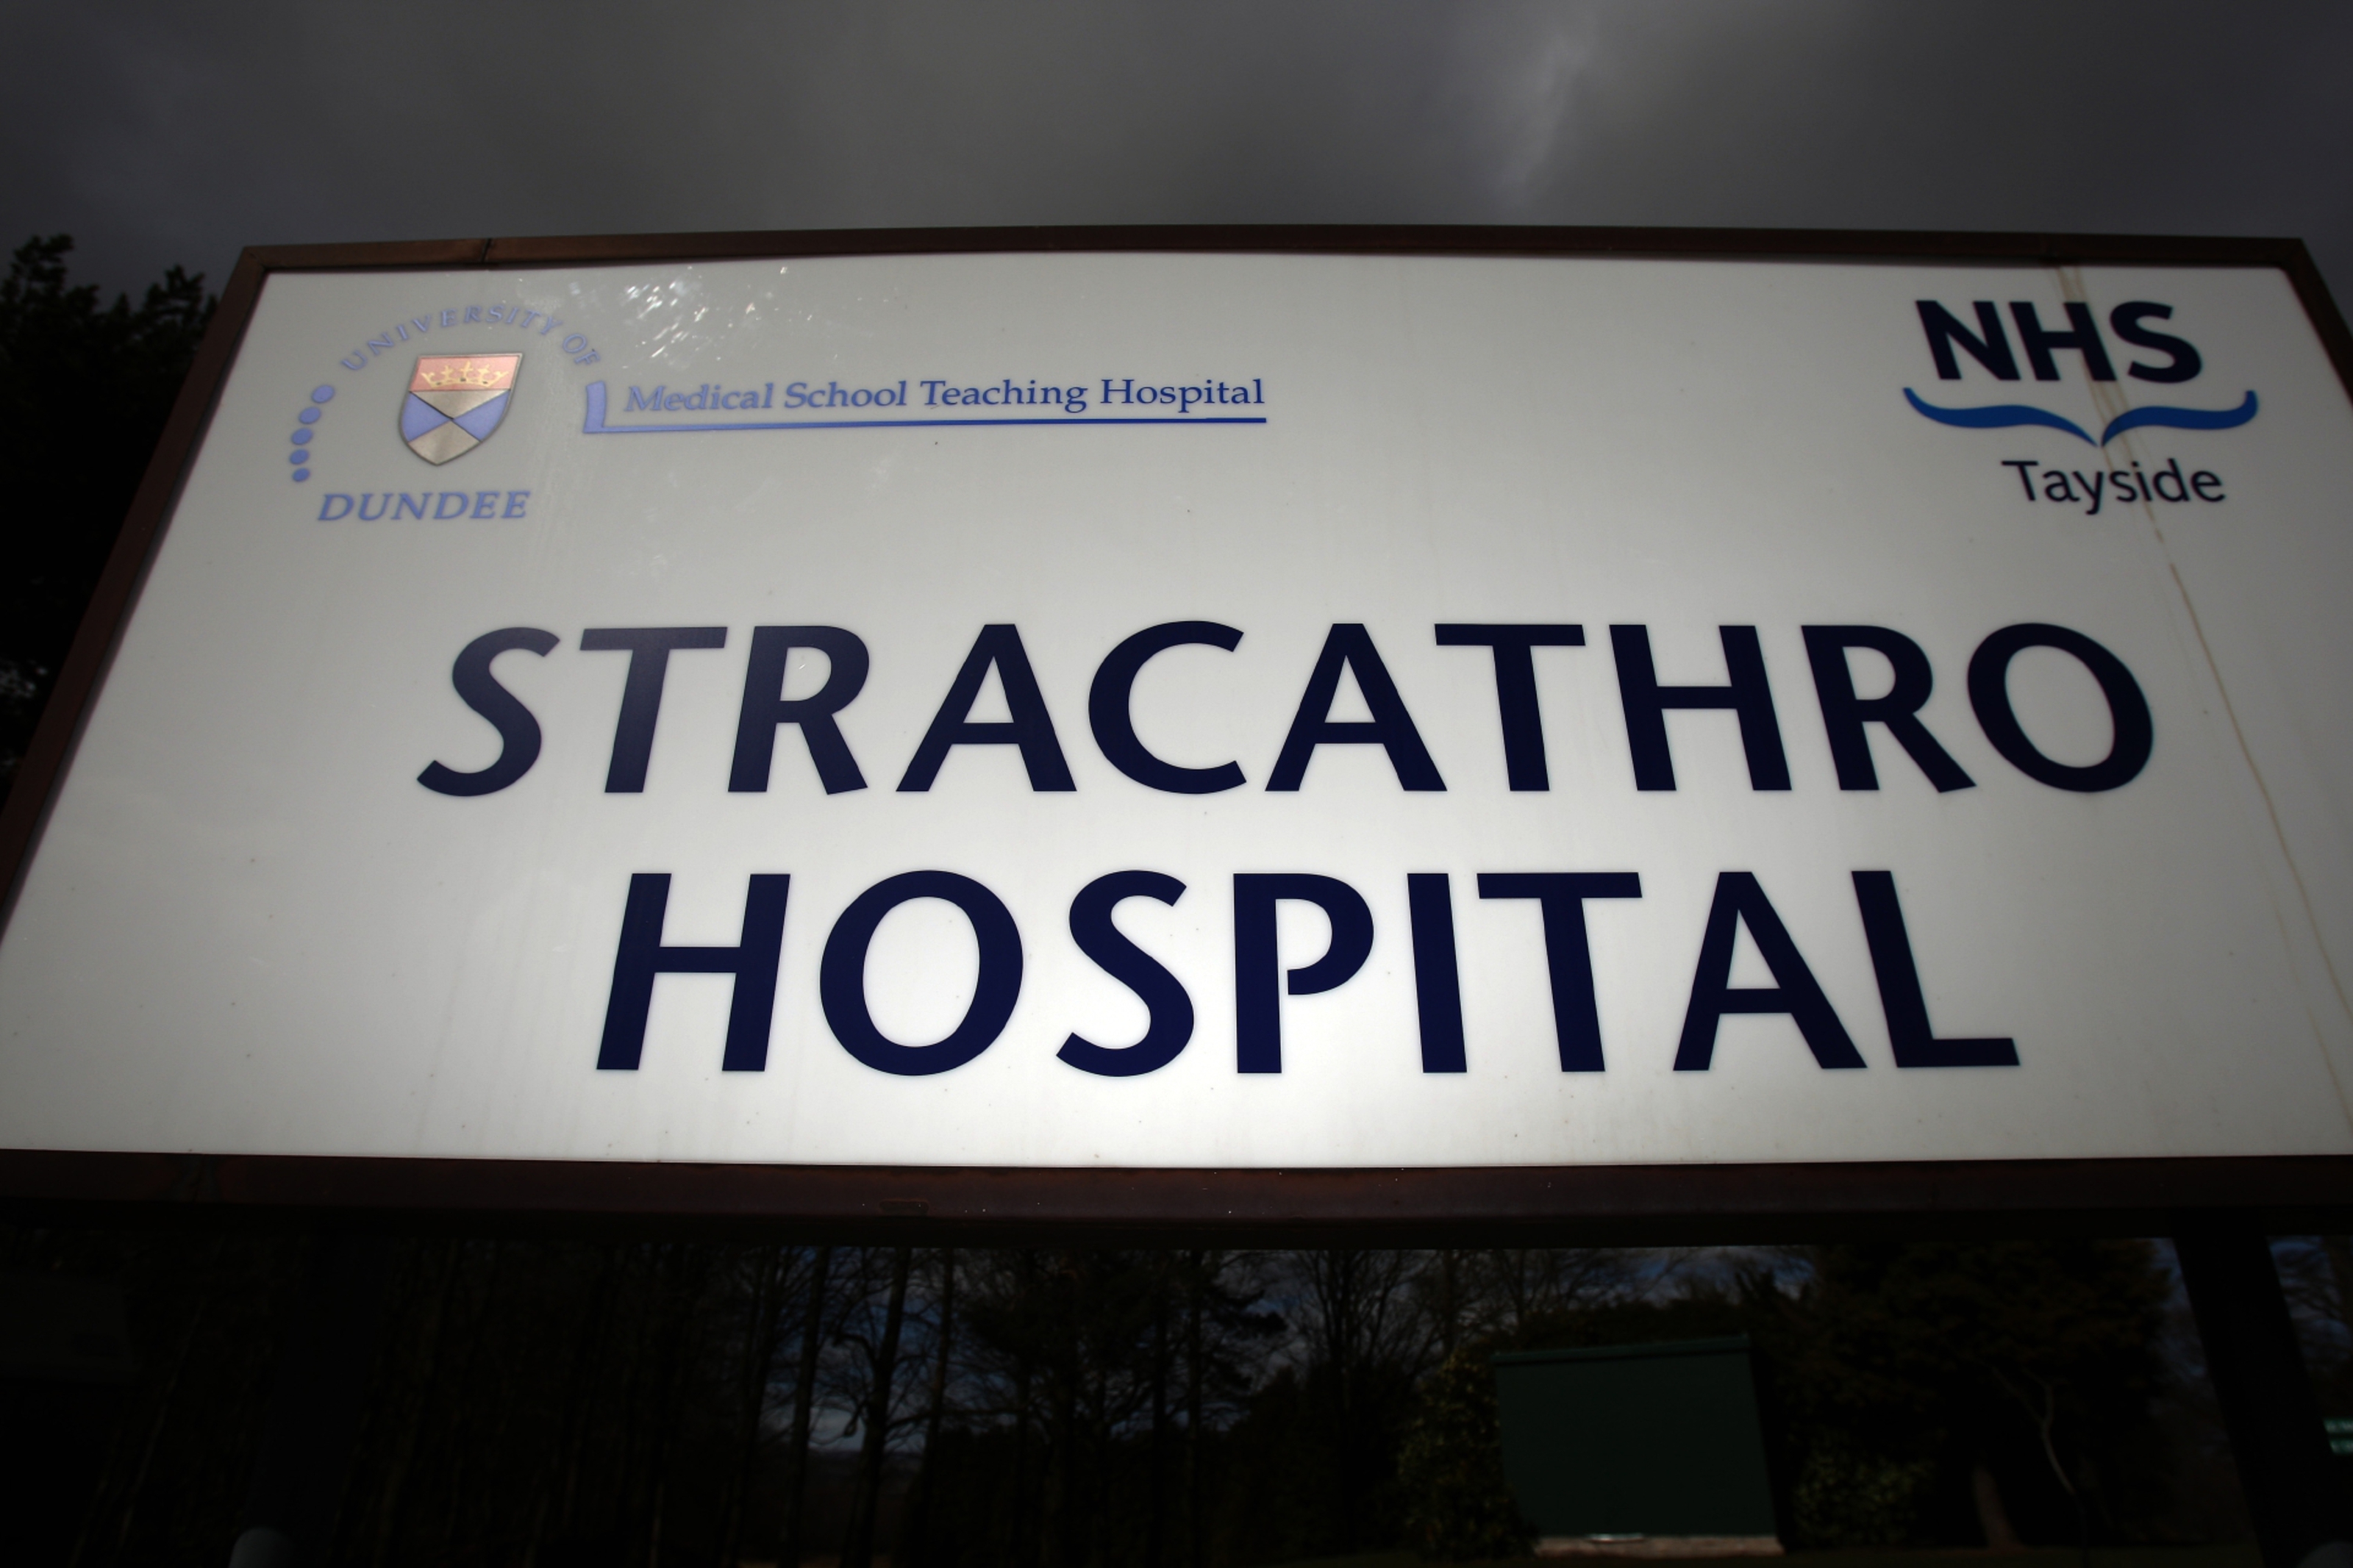 Stracathro Hospital.